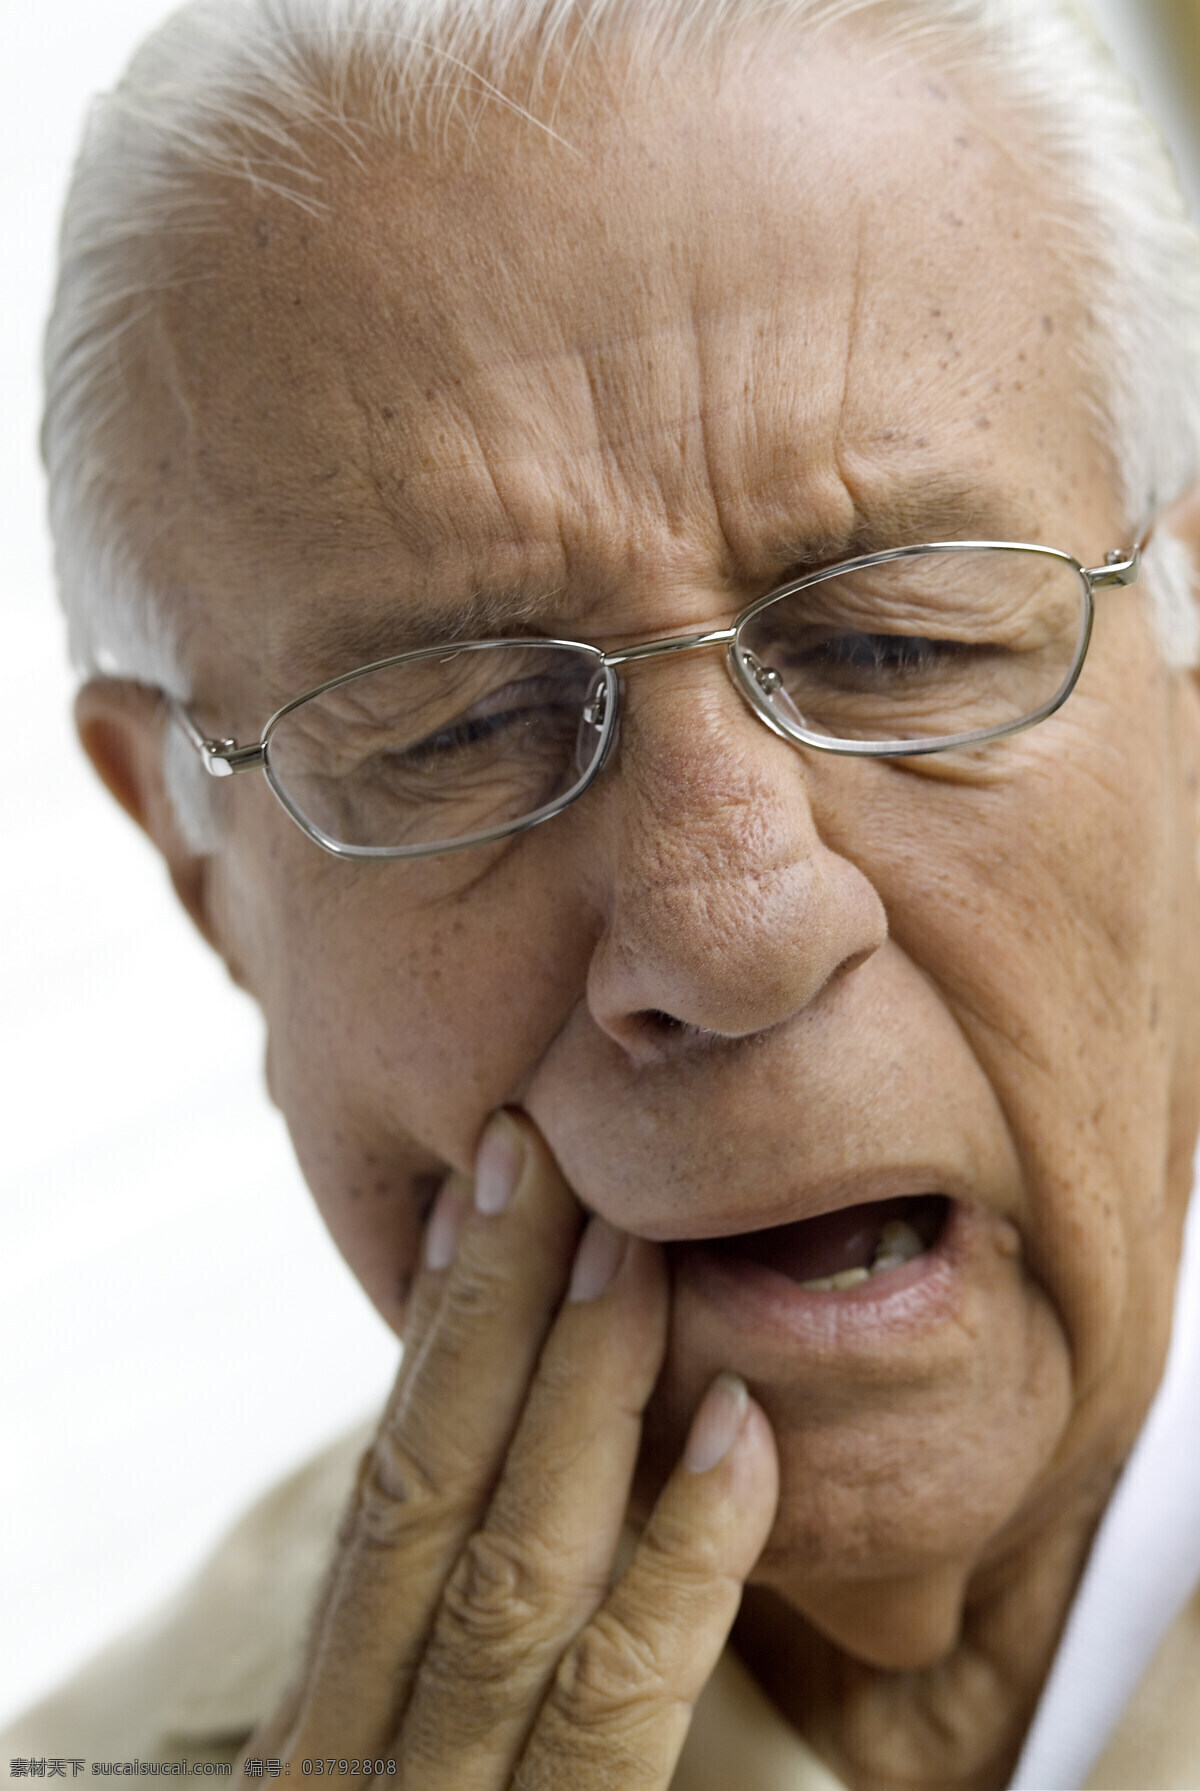 牙痛的老人 生病的老人 痛苦 老年人 高清 老人 表情 人物表情 老年人表情 老年人物 人物图库